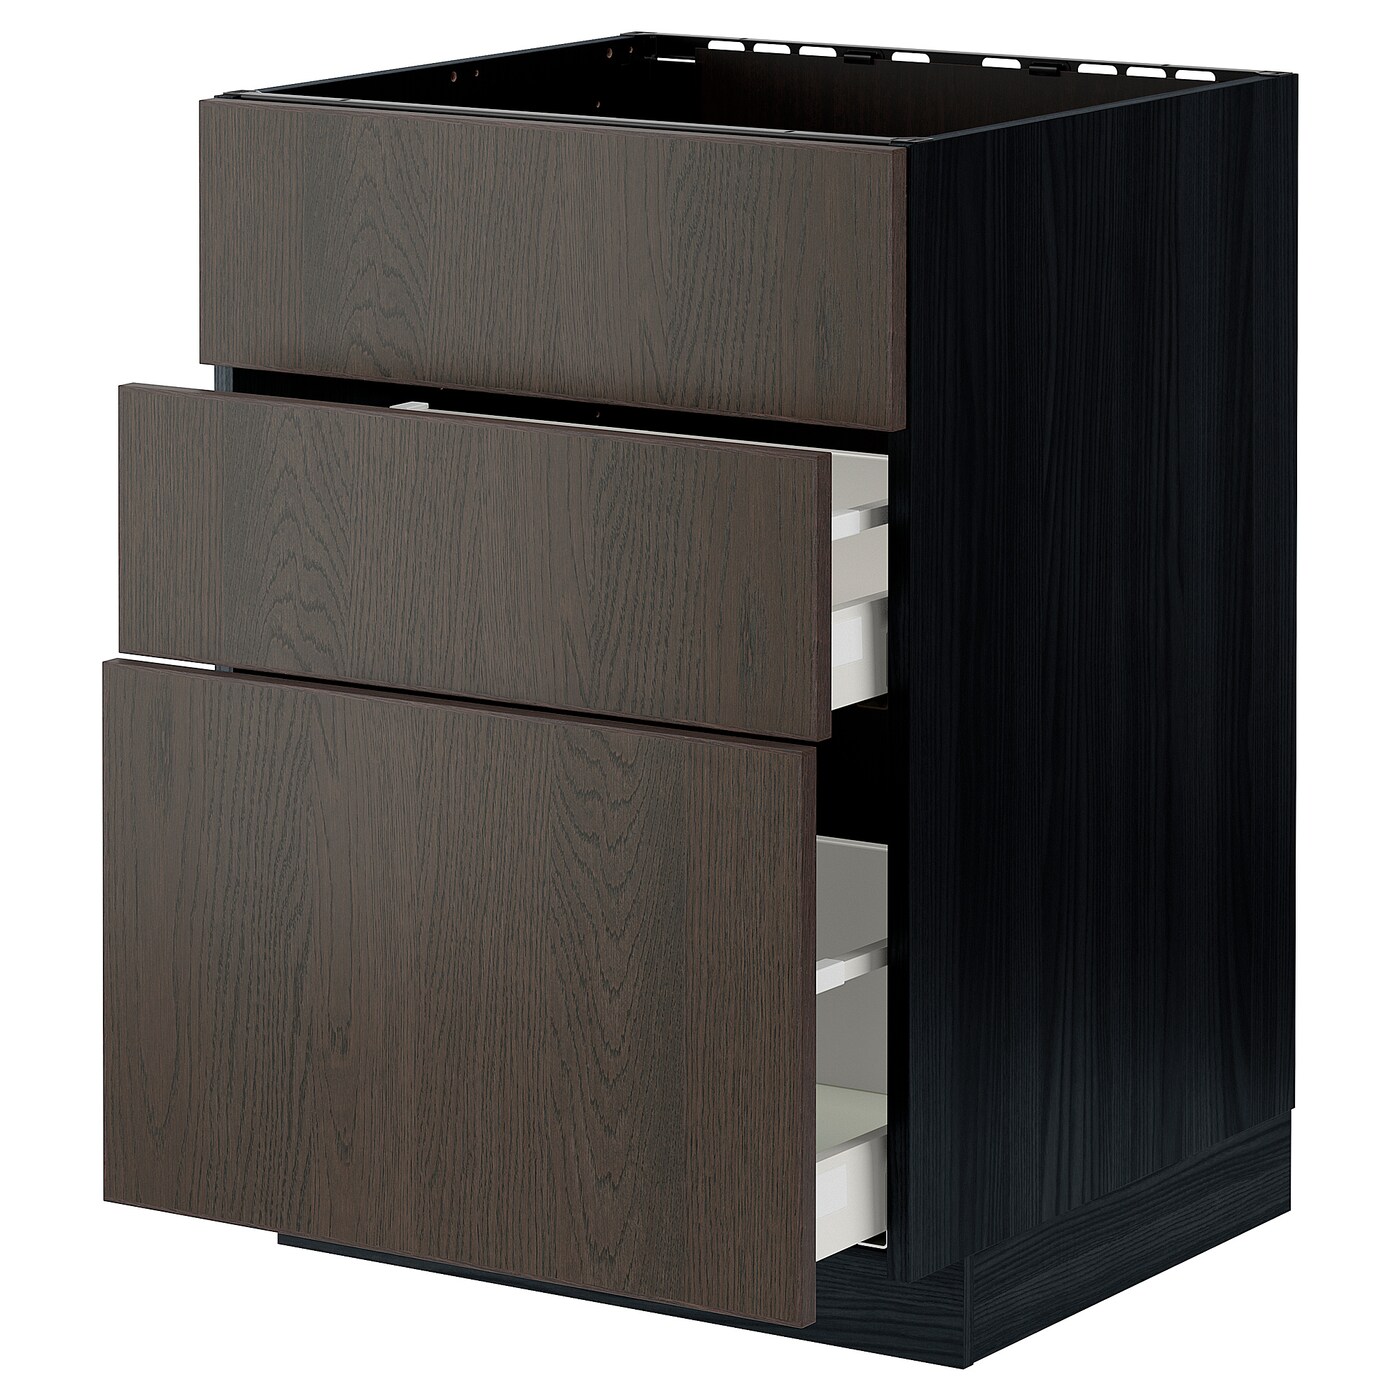 Напольный шкаф - IKEA METOD MAXIMERA, 80x60x62см, черный/темно-коричневый, МЕТОД МАКСИМЕРА ИКЕА